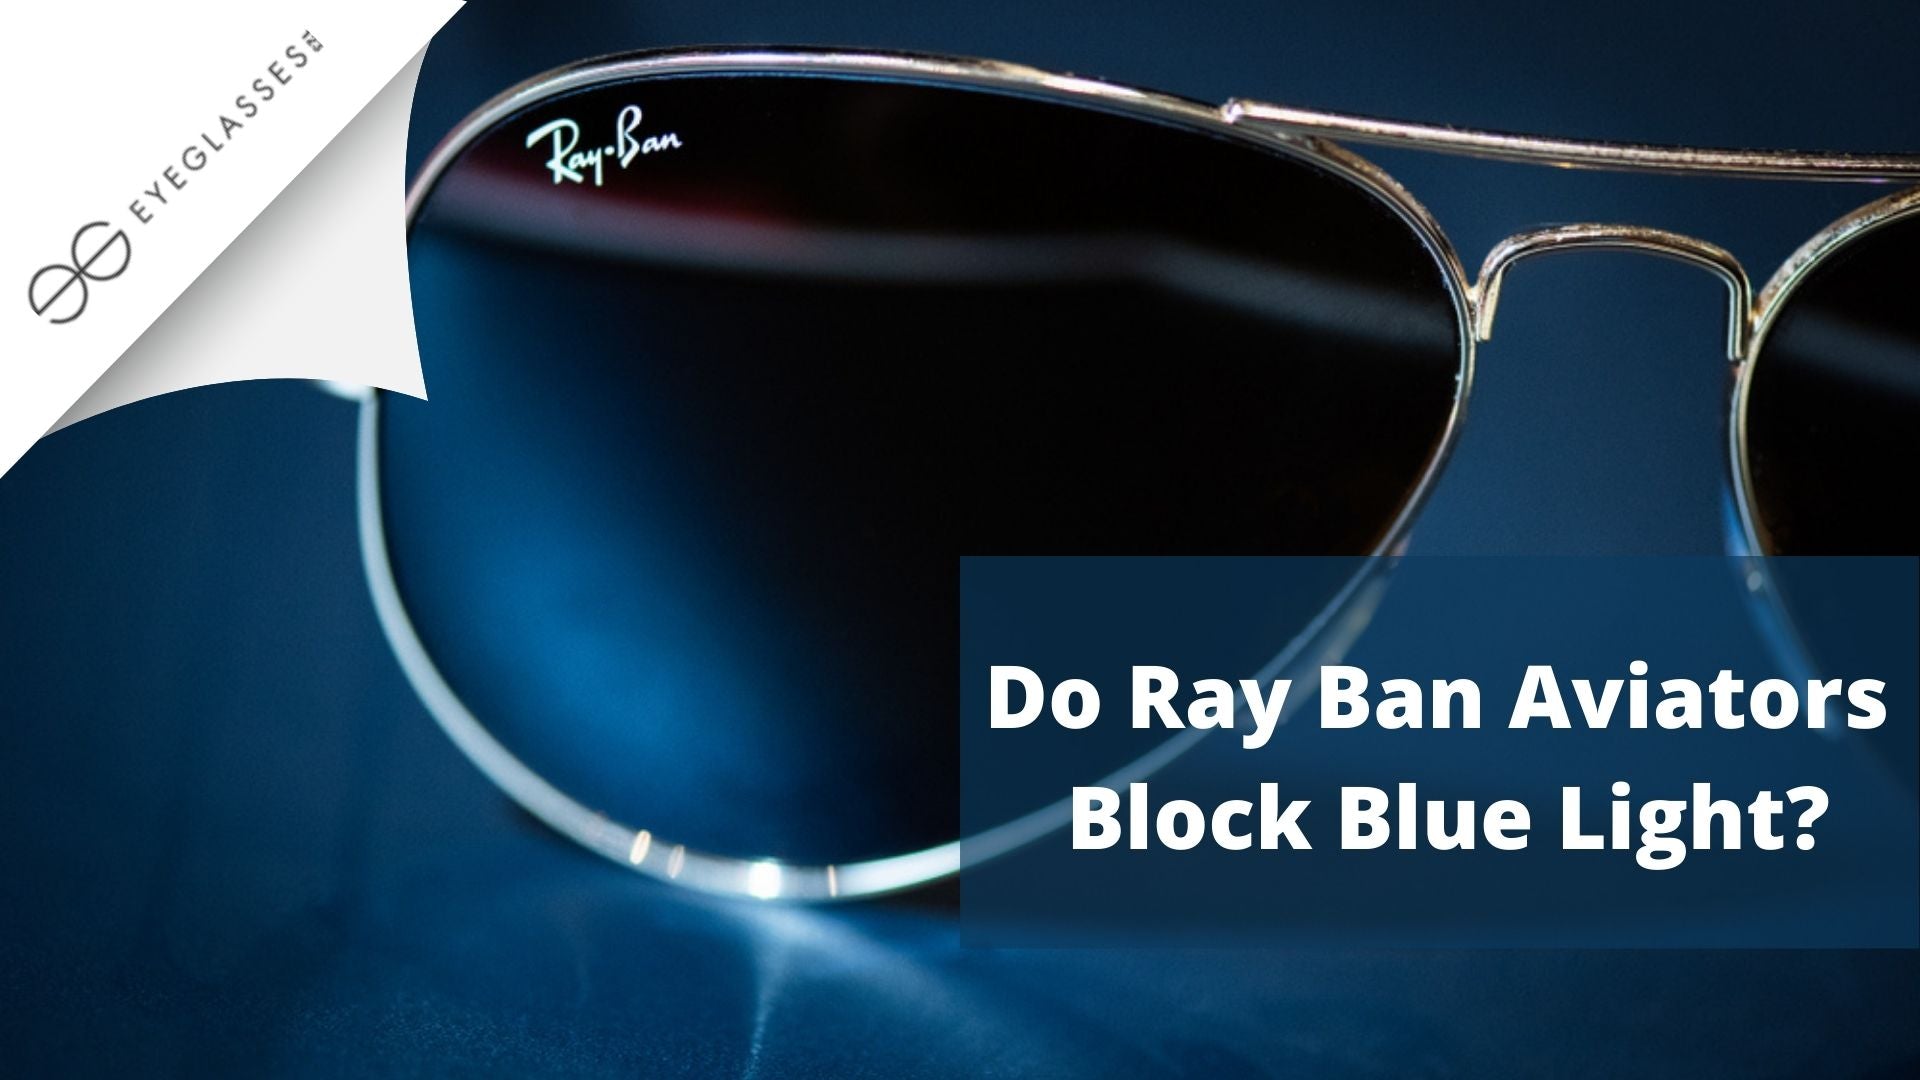 Do Ray Bans block all UV?